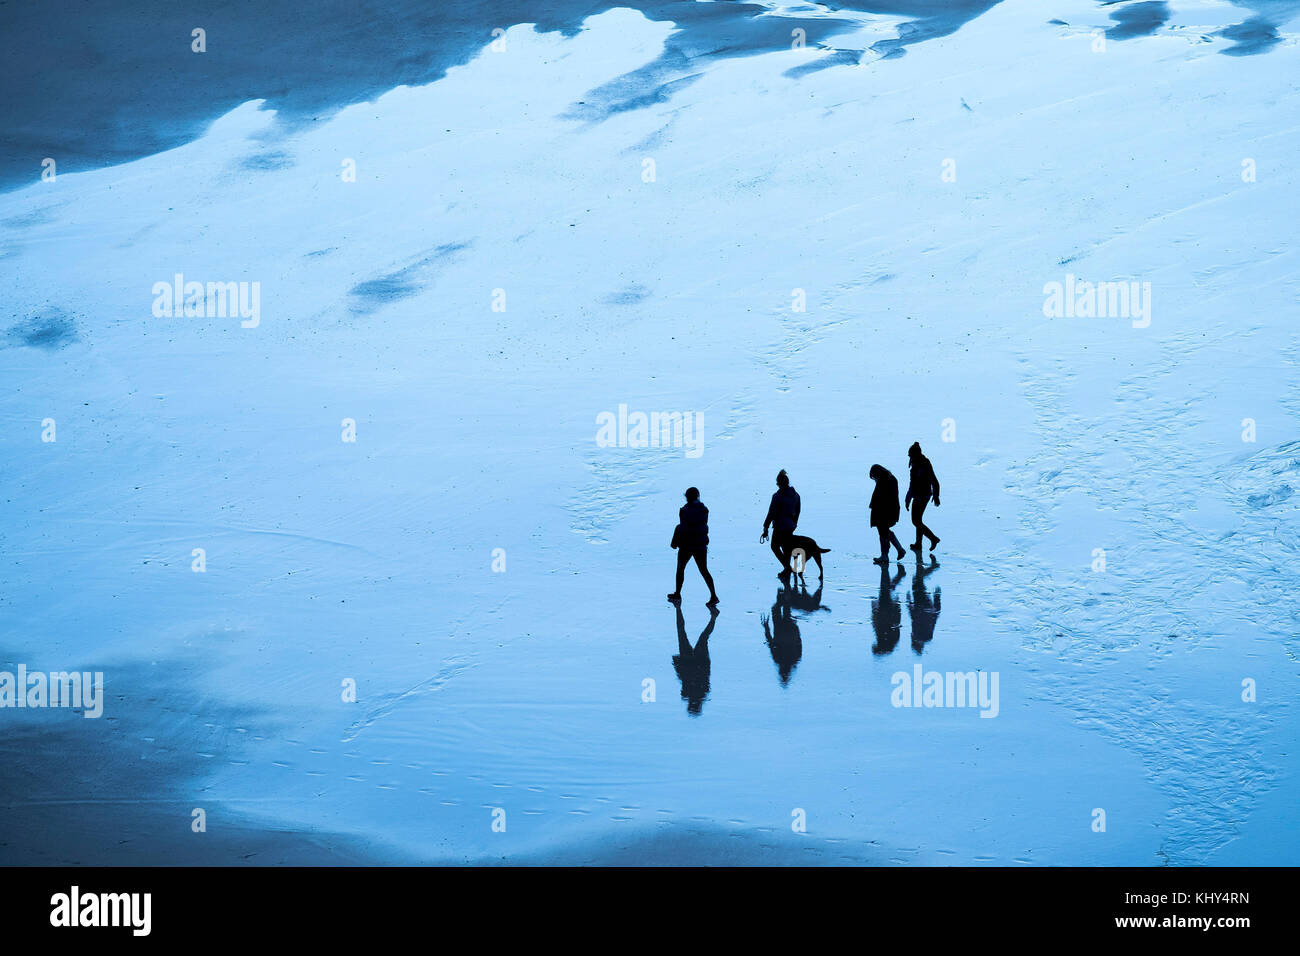 Die Menschen zahlen in Silhouette gesehen gehen über einen Strand am frühen Morgen Licht. Stockfoto